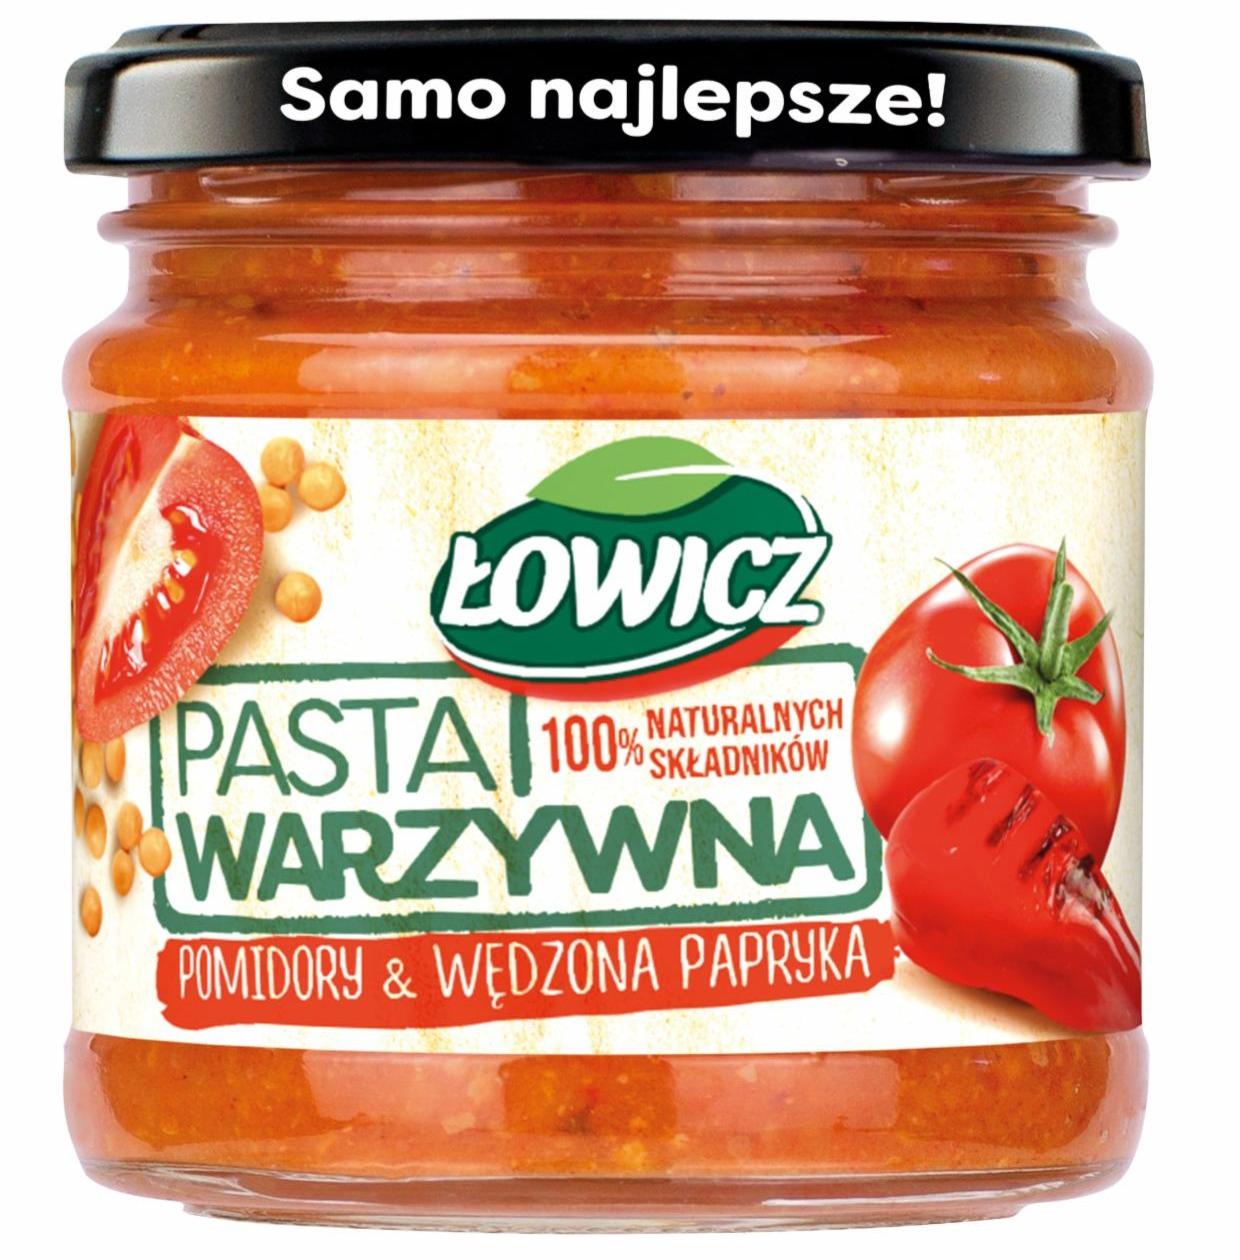 Fotografie - Pasta warzywna pomidory & wędzona papryka Łowicz